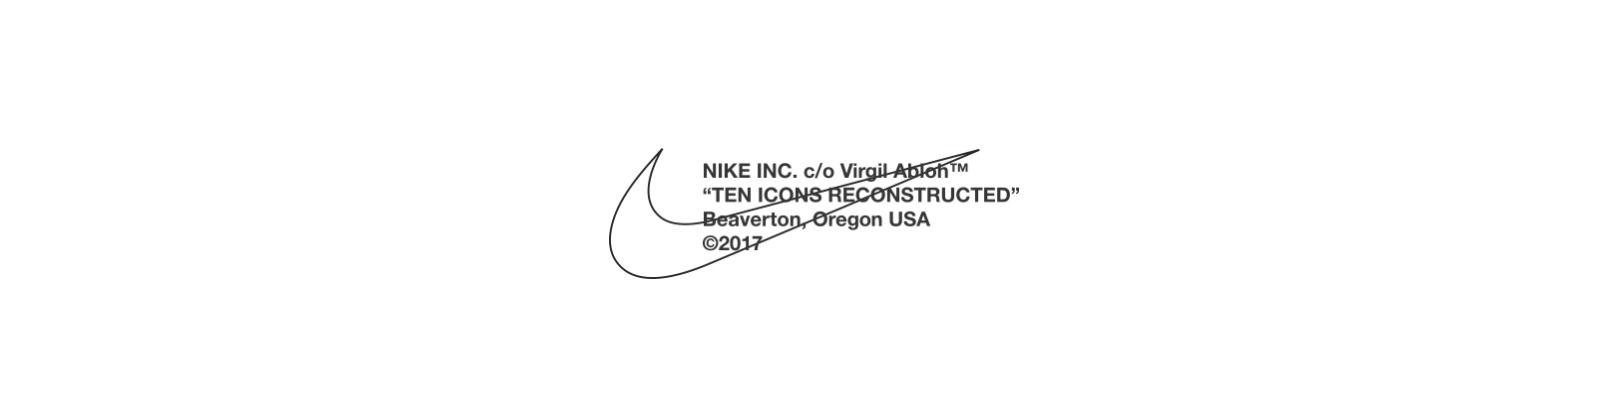 nike logo x off white 